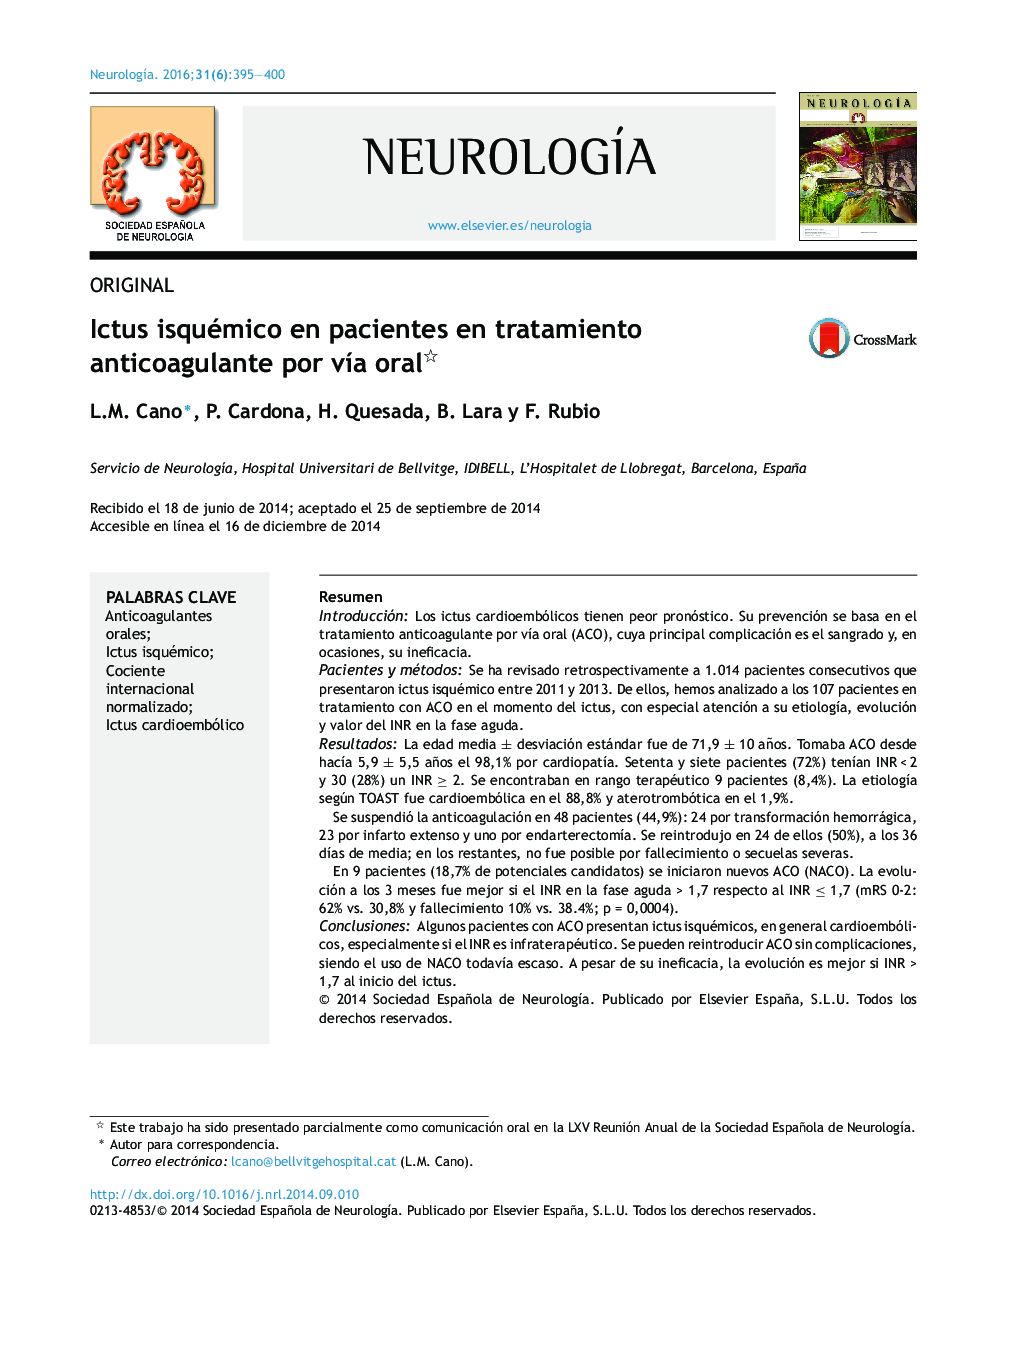 Ictus isquémico en pacientes en tratamiento anticoagulante por vía oral 